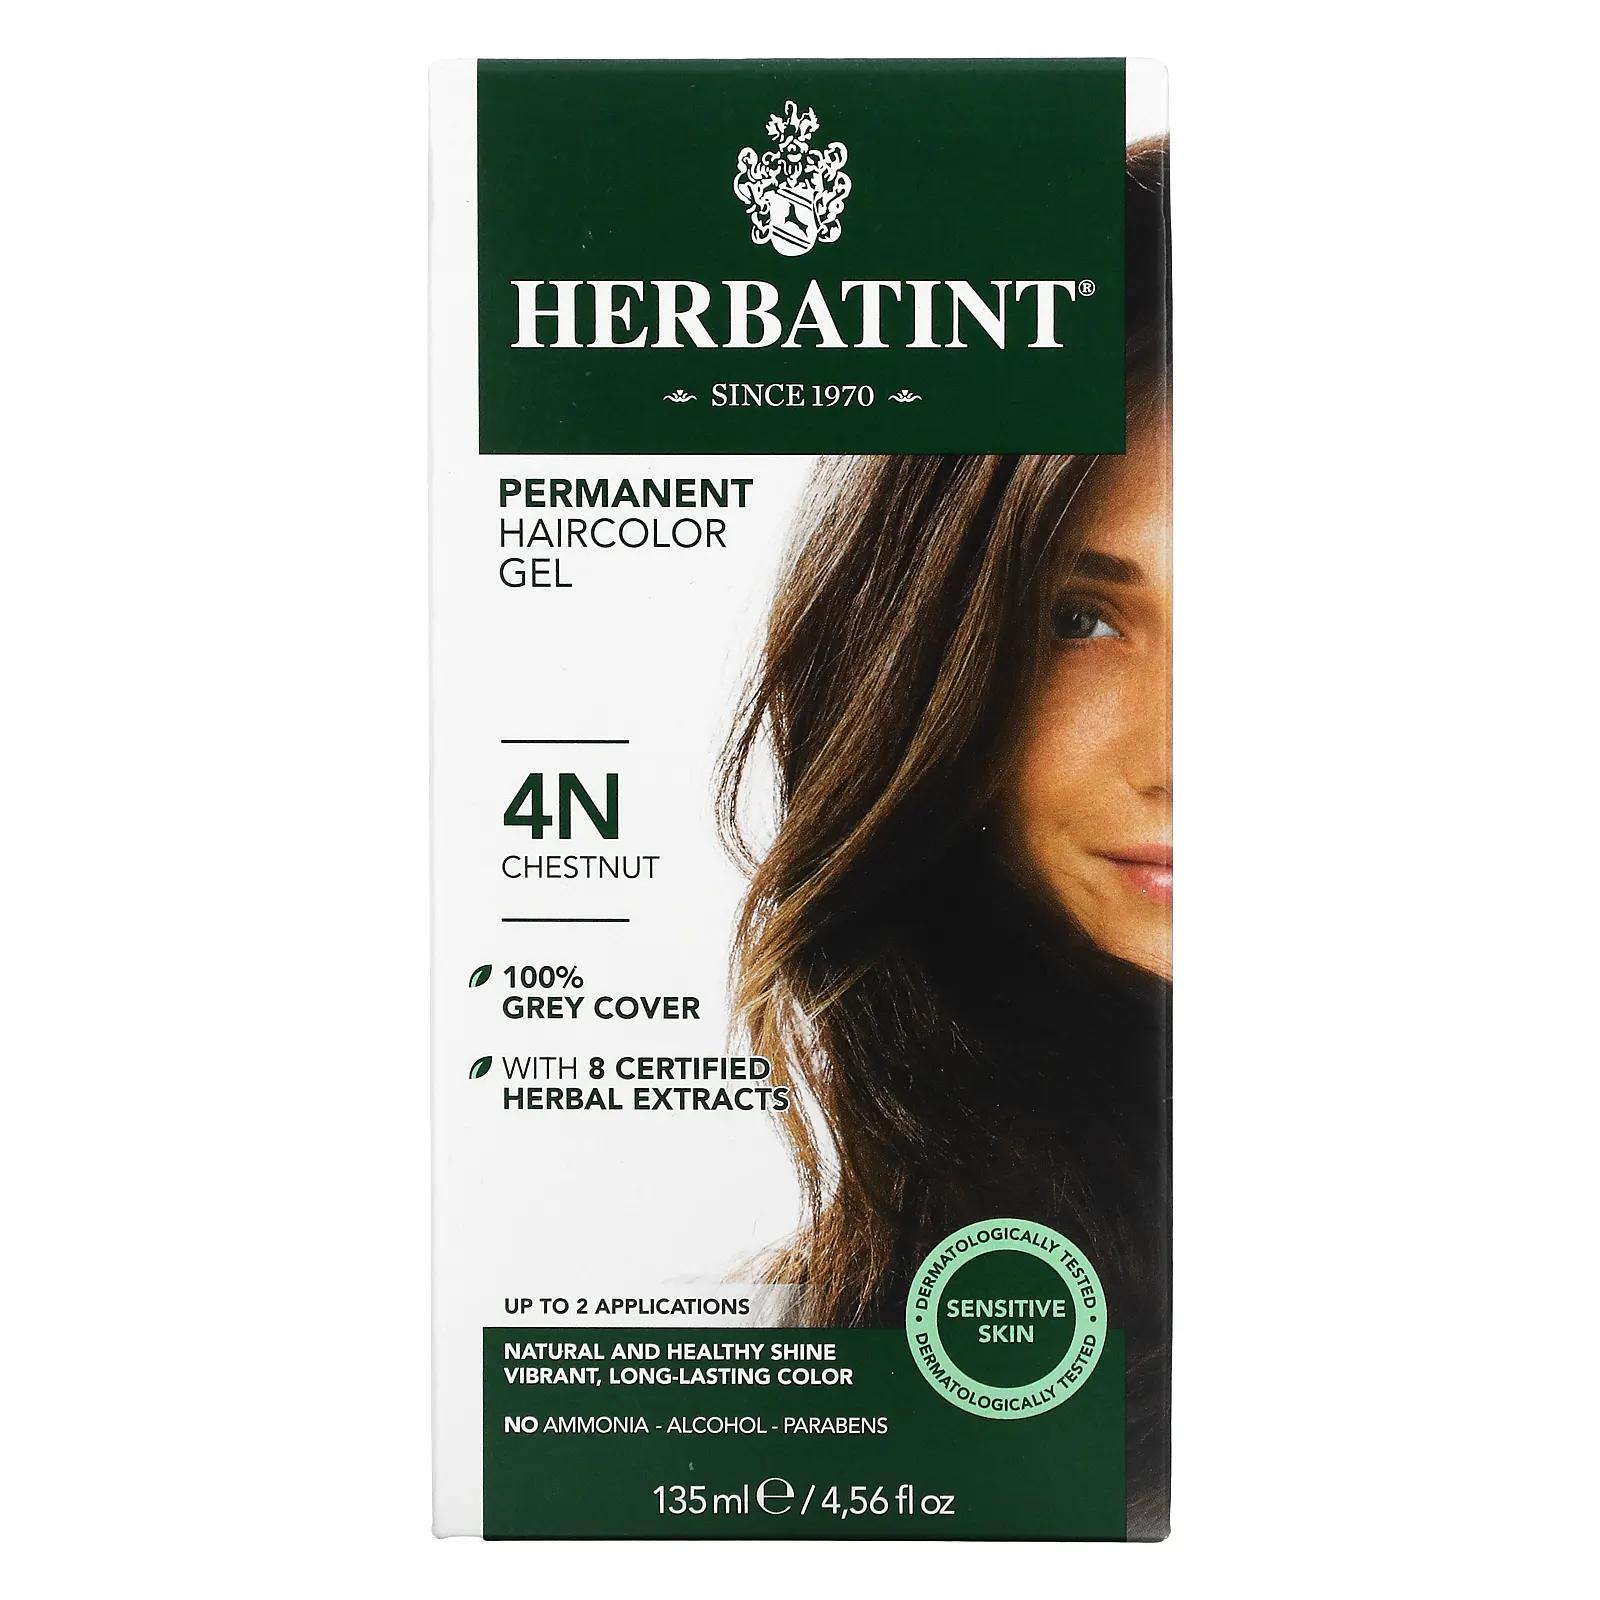 Herbatint Перманентная растительная краска-гель для волос 4N каштан 4,56 жидкой унции (135 мл) перманентная гель краска для волос herbatint 5m светлый махагони каштан 135 мл